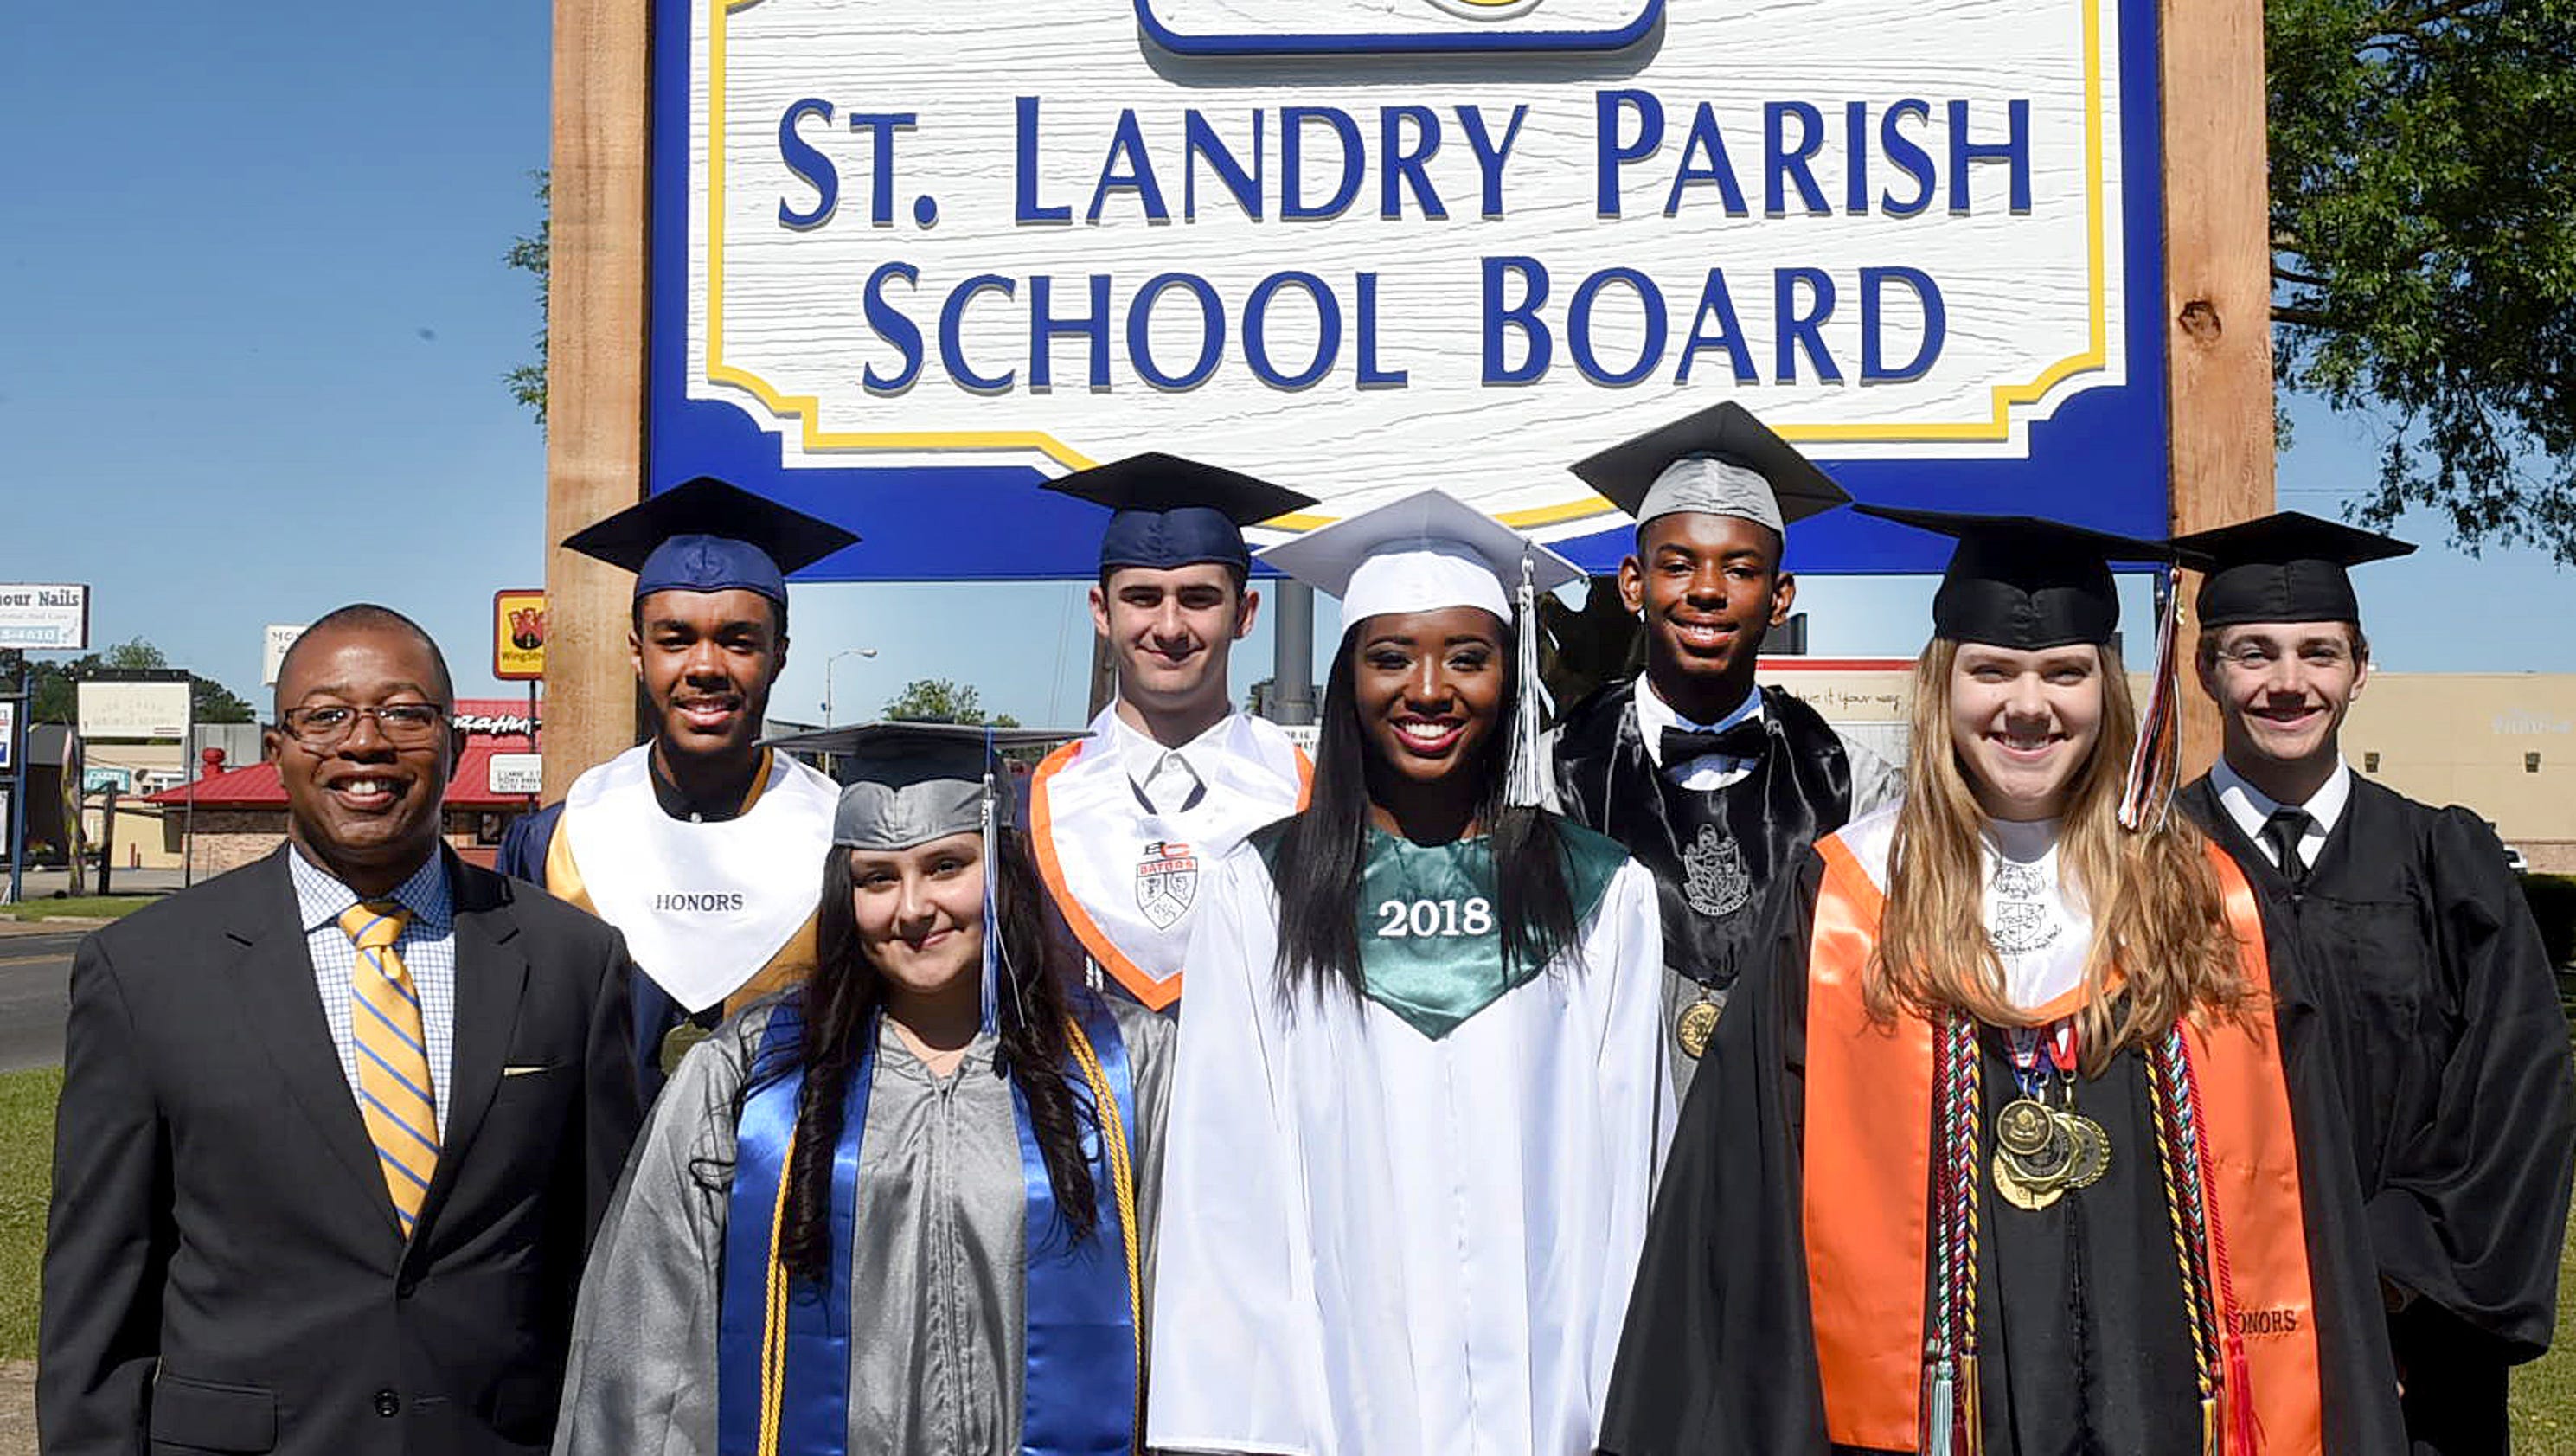 Meet the top graduating seniors in St. Landry Parish